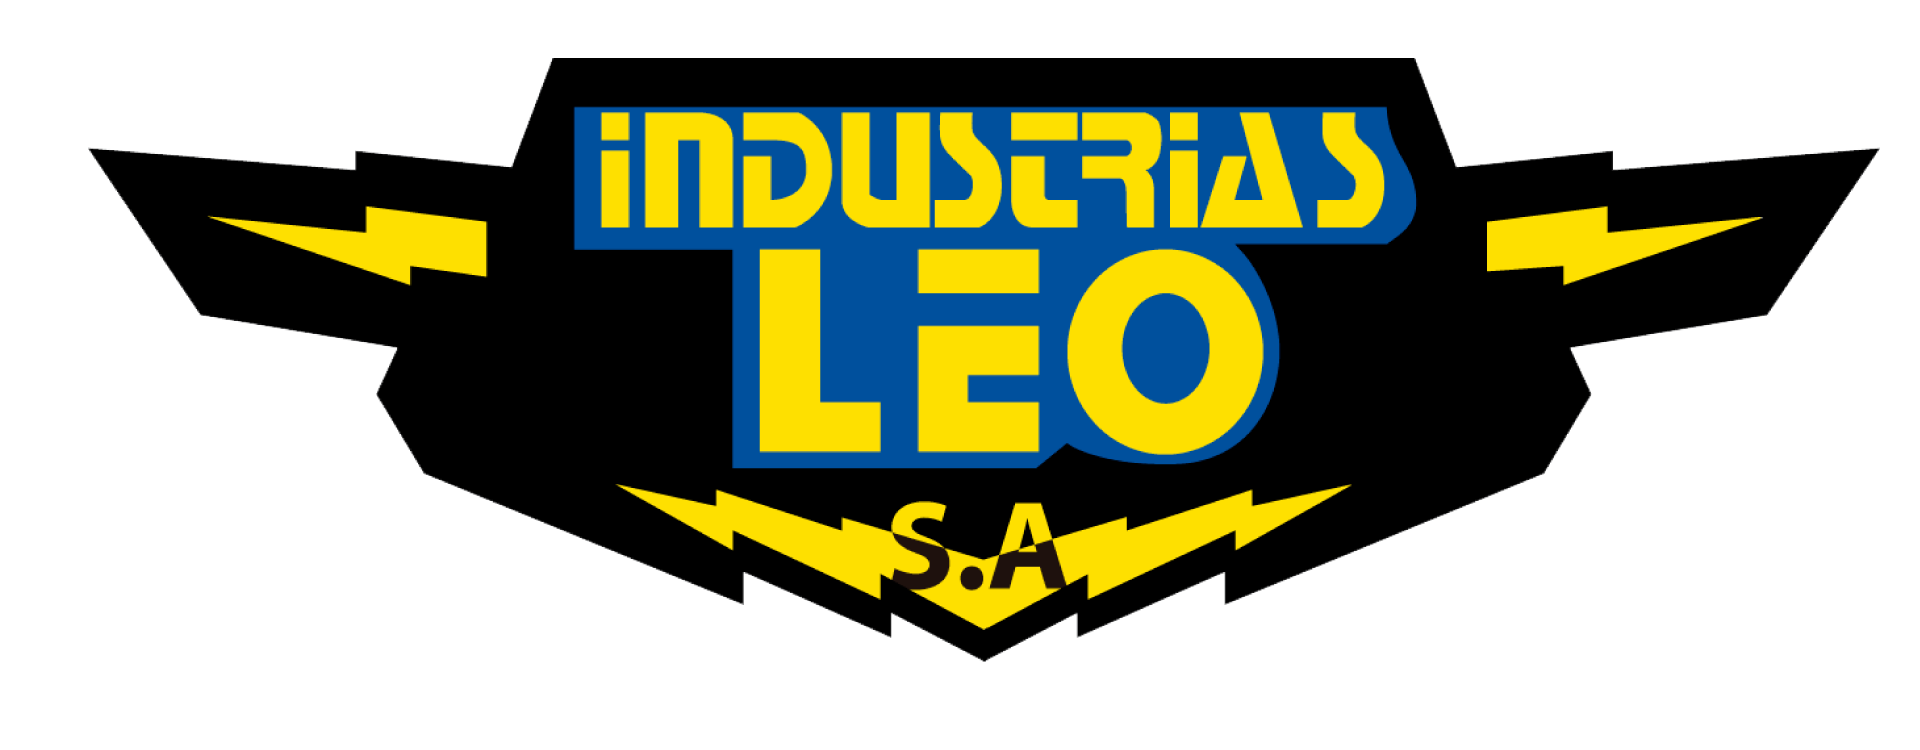 Industrias Leo